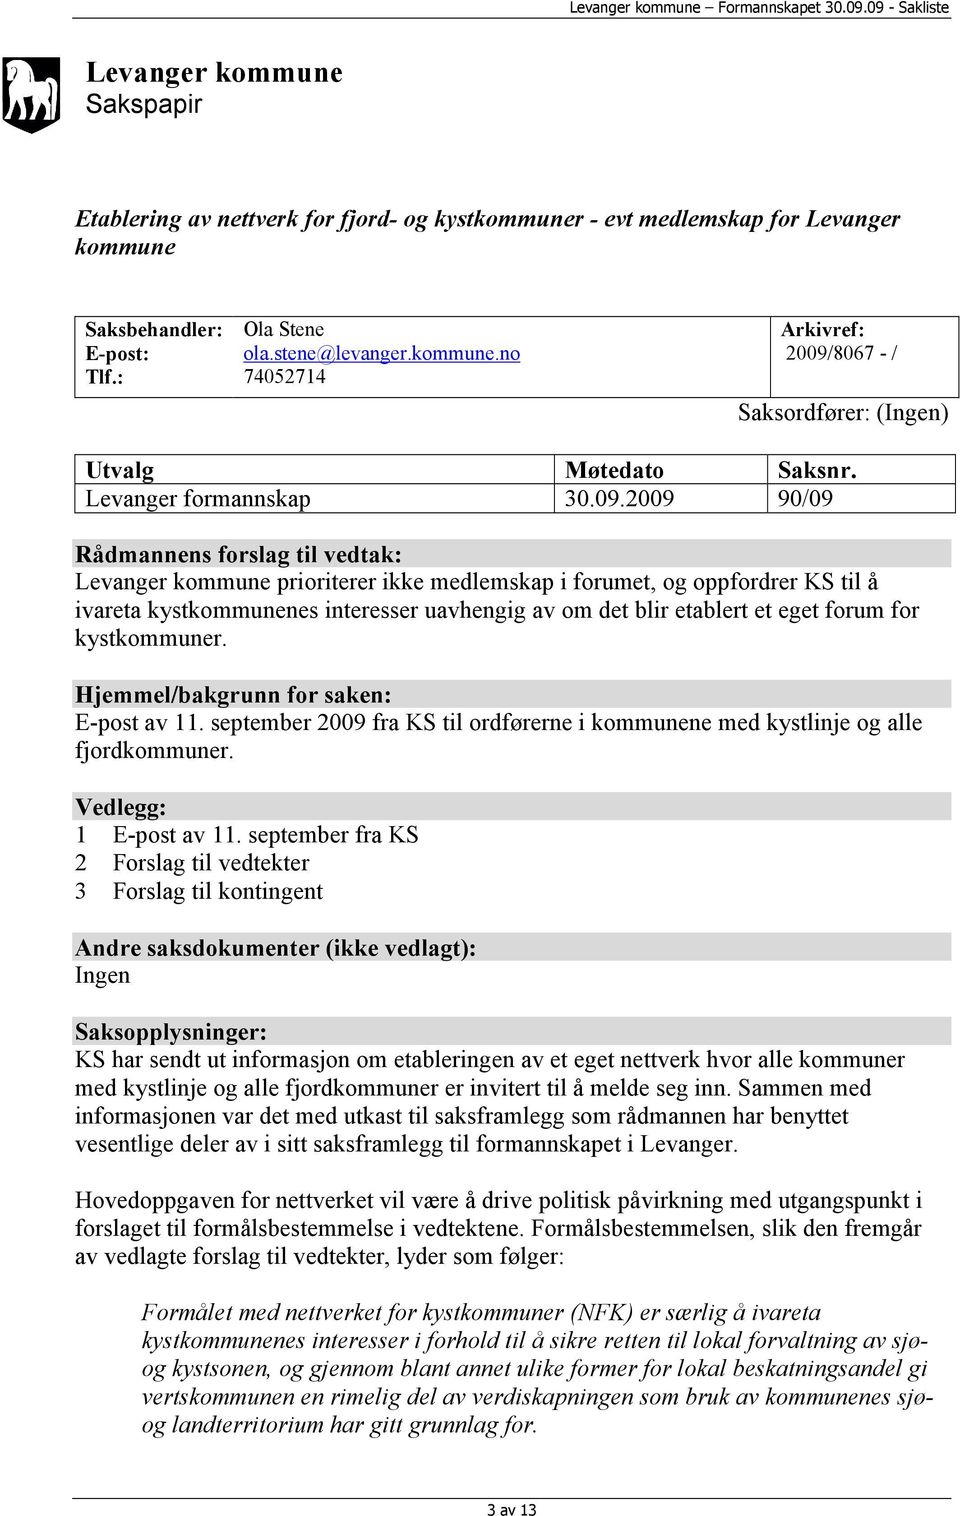 2009 90/09 Rådmannens forslag til vedtak: Levanger kommune prioriterer ikke medlemskap i forumet, og oppfordrer KS til å ivareta kystkommunenes interesser uavhengig av om det blir etablert et eget